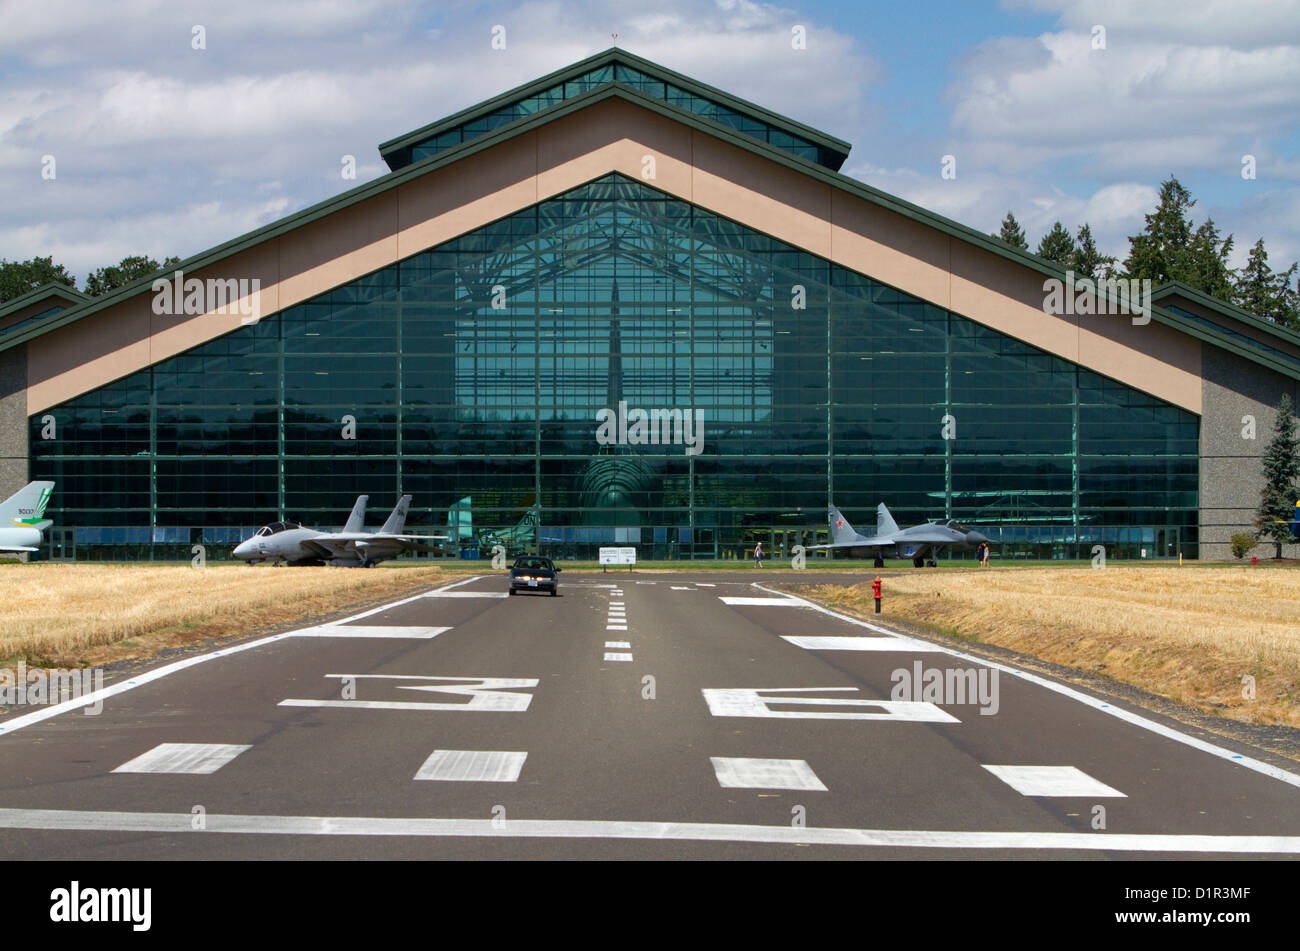 Evergreen Aviation and Space Museum situé dans la région de McMinnville, Oregon, USA. Banque D'Images